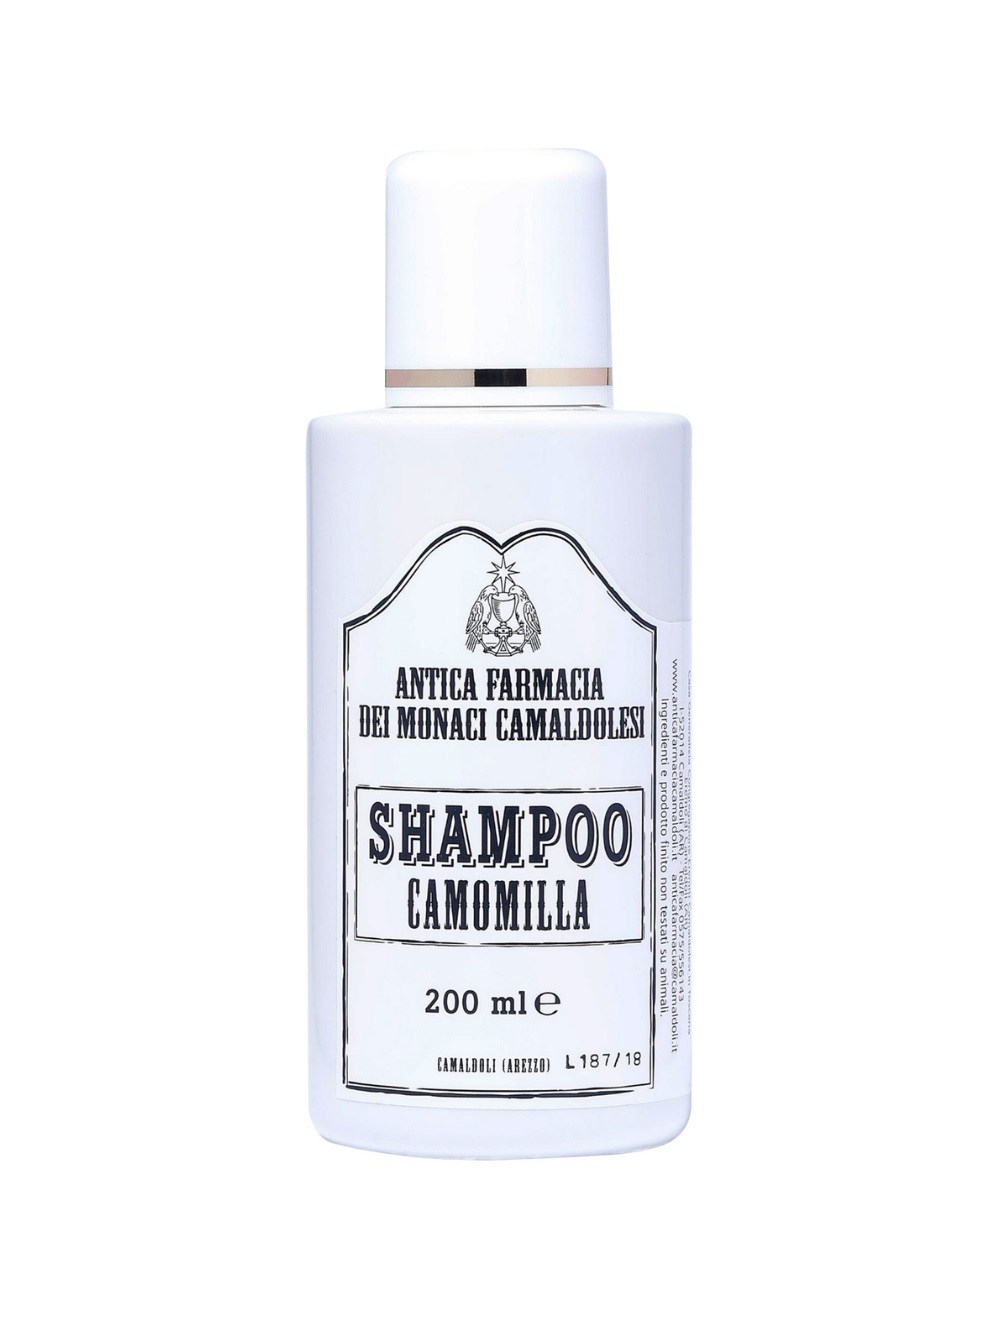 Camomile Shampoo カモミーラシャンプー(200ml)